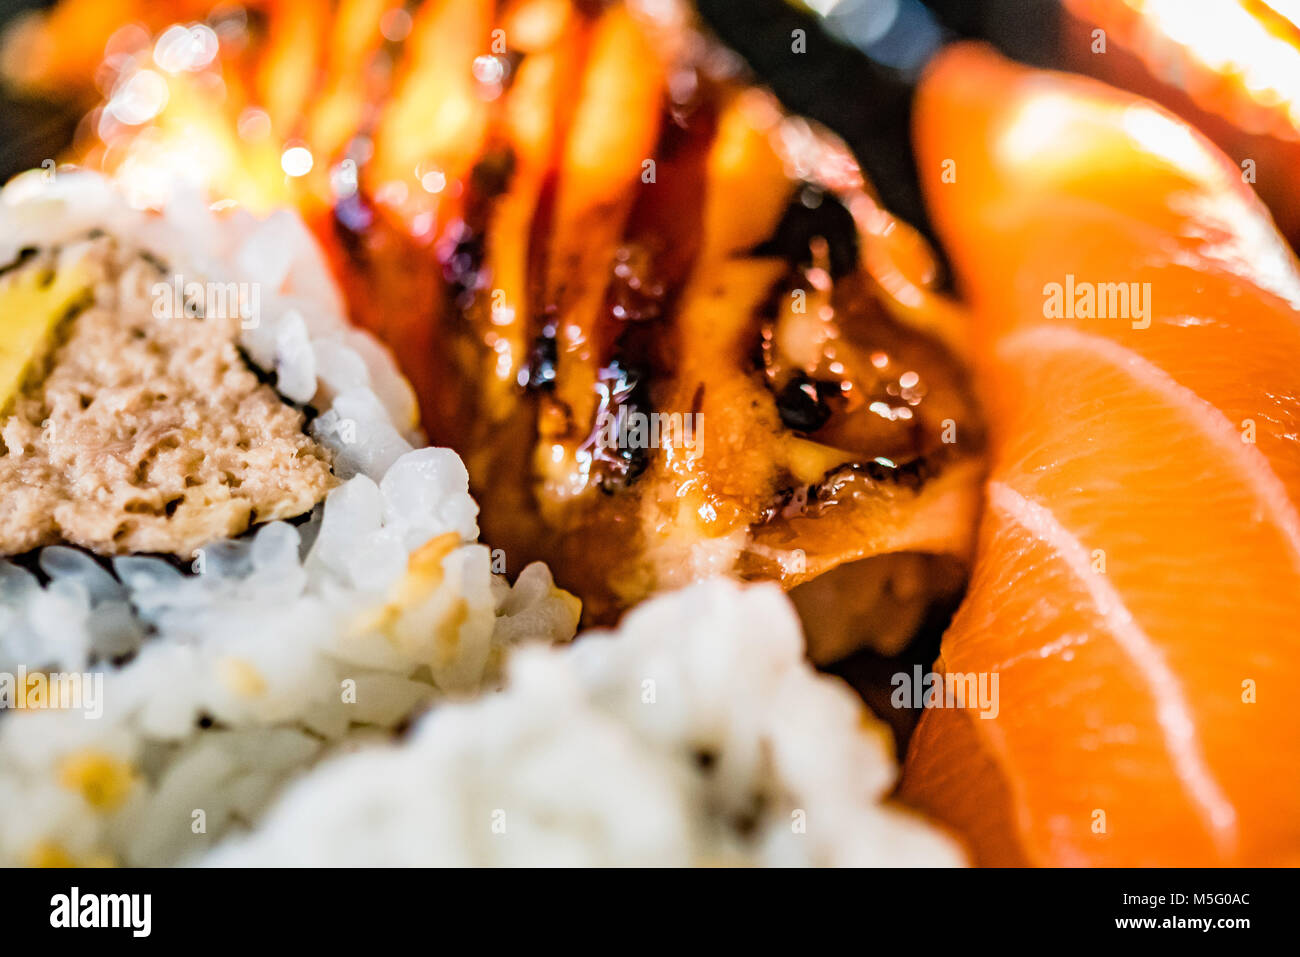 Poisson frais mixtes plaque sushi, macro photographie alimentaire, selective focus. La nourriture japonaise, saumon, maquereau, thon, riz à sushi, rose, blanc, gros plan. Banque D'Images